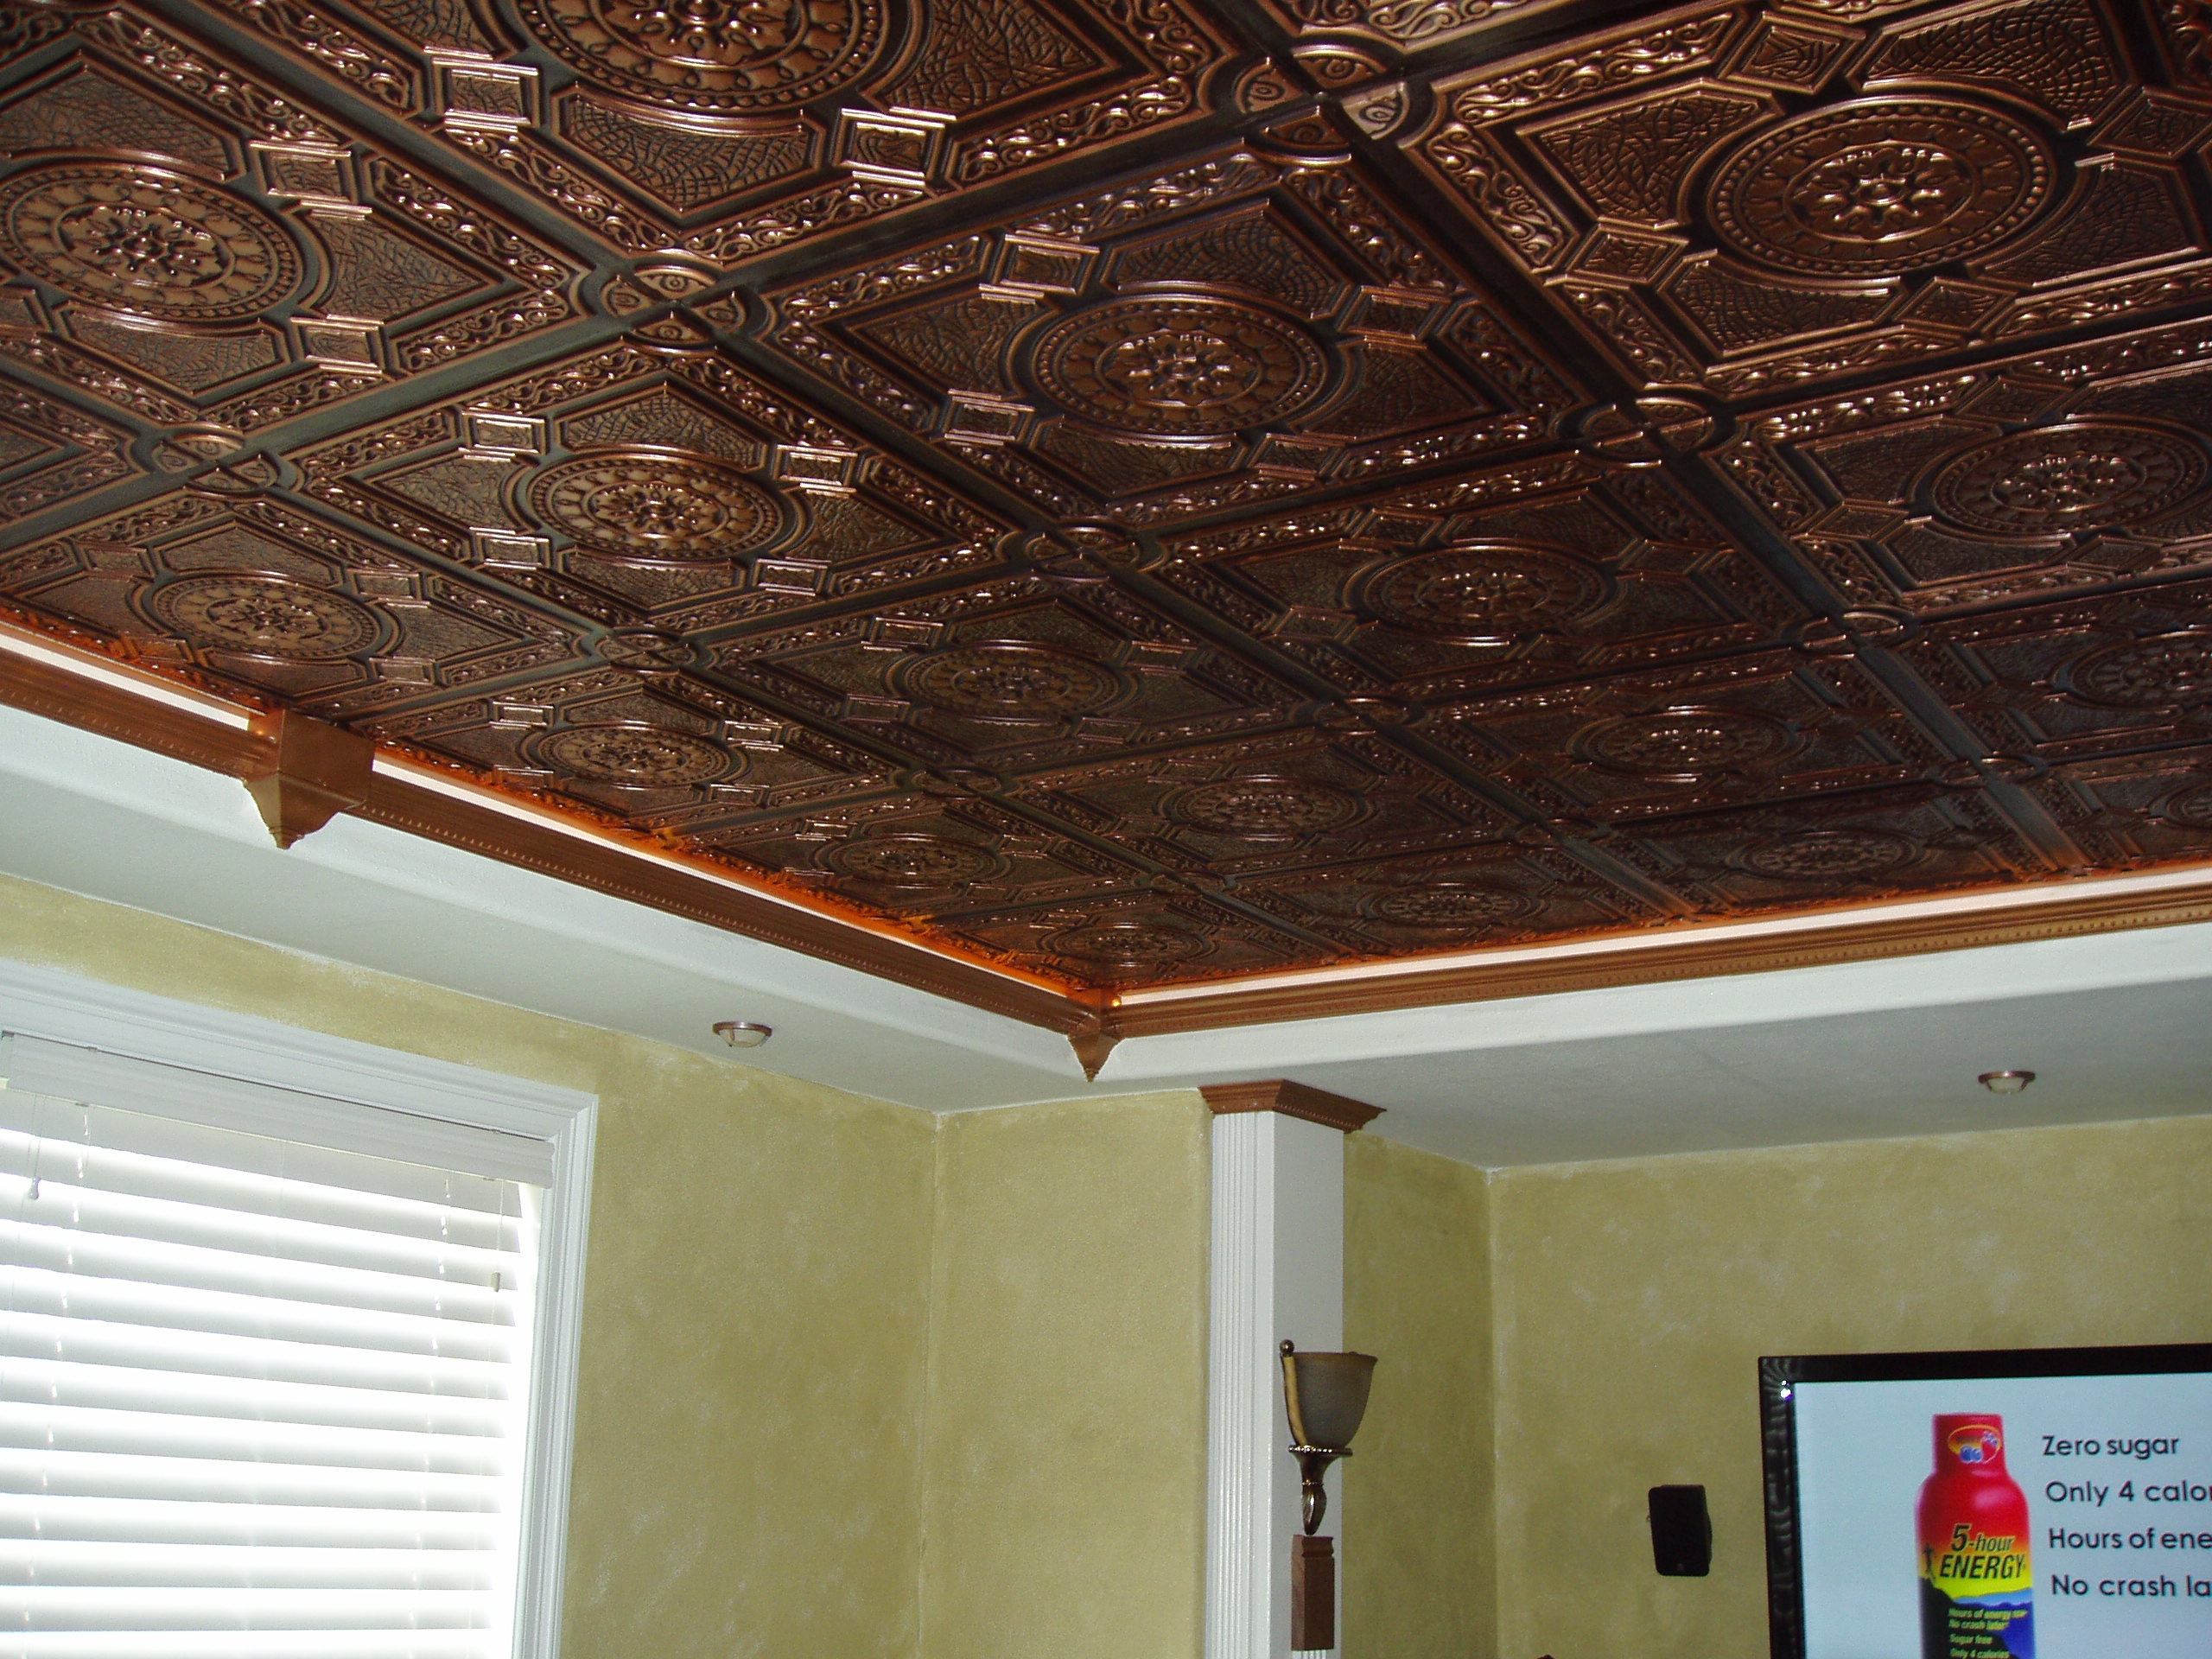 Plastic Faux Ceiling Tiles Plastic Faux Ceiling Tiles decorative plastic ceiling tiles roselawnlutheran 2560 X 1920